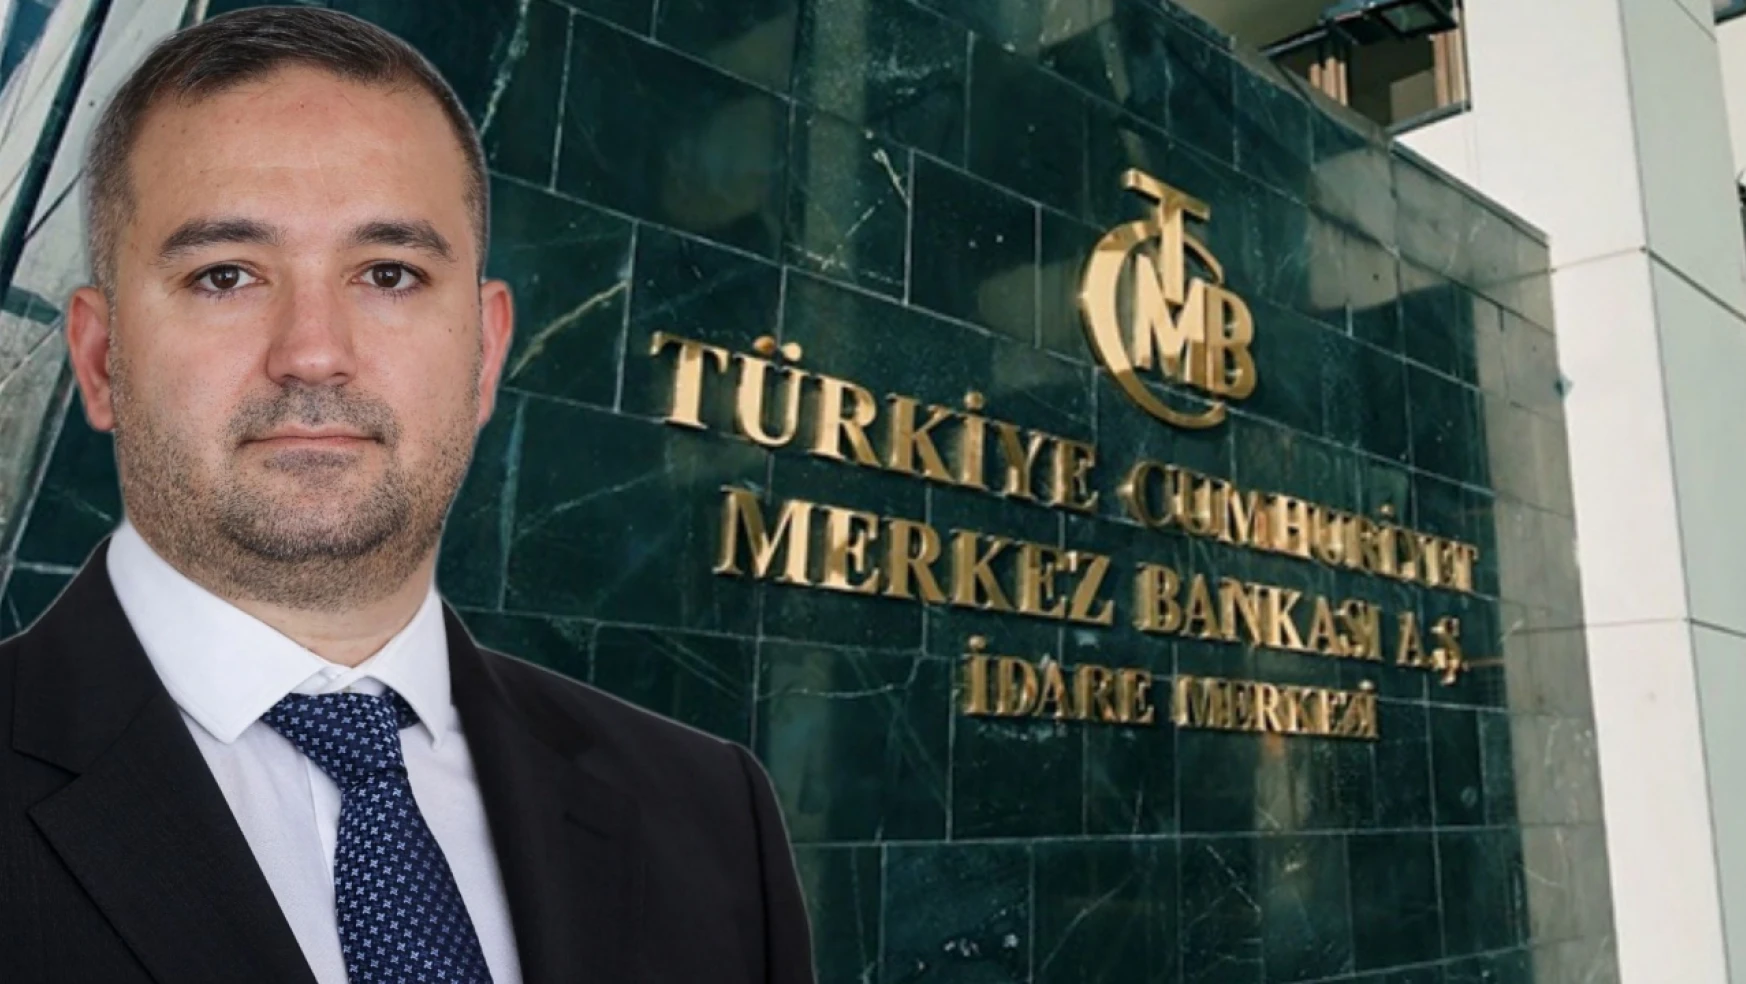 Merkez Bankası'nın Yeni Başkanı Fatih Karahan Kimdir?